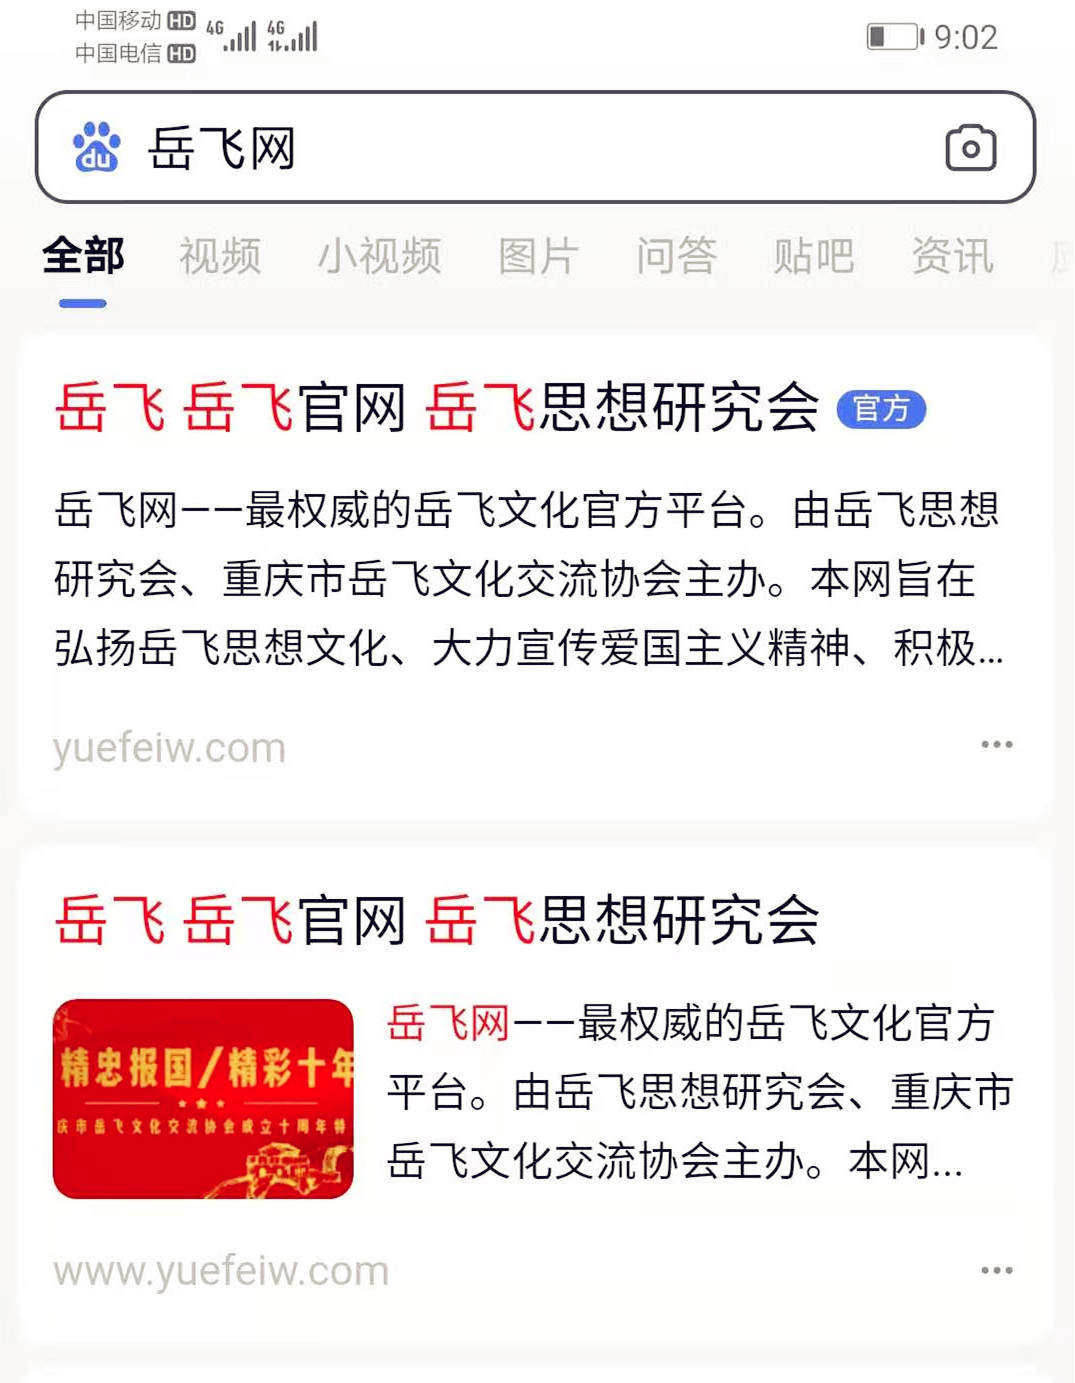 岳飞网 全国唯一的岳飞文化官方网站